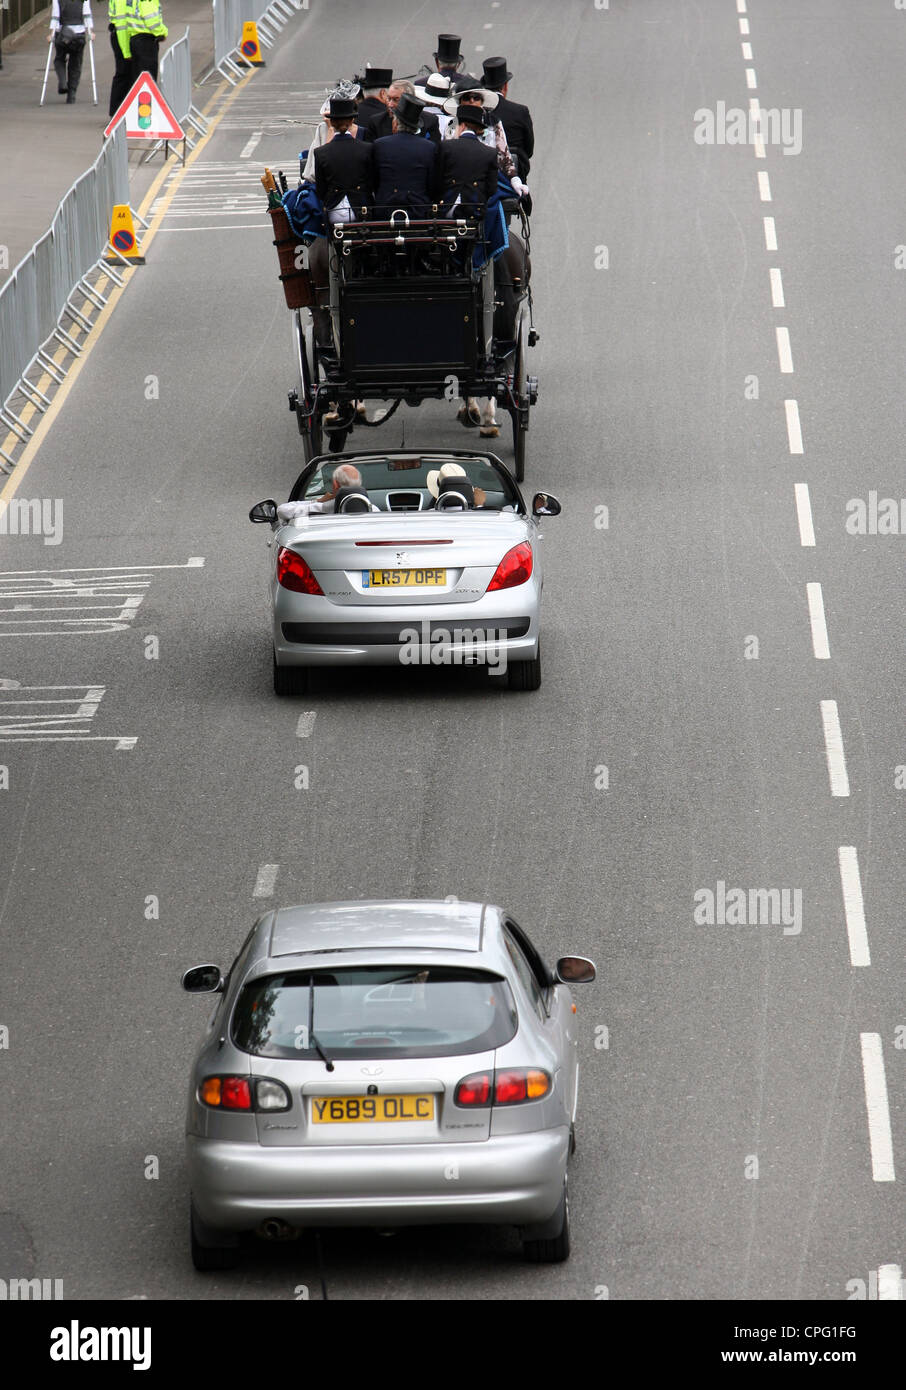 Automóviles circulando lentamente detrás de una calesa, Ascot, Reino Unido Foto de stock